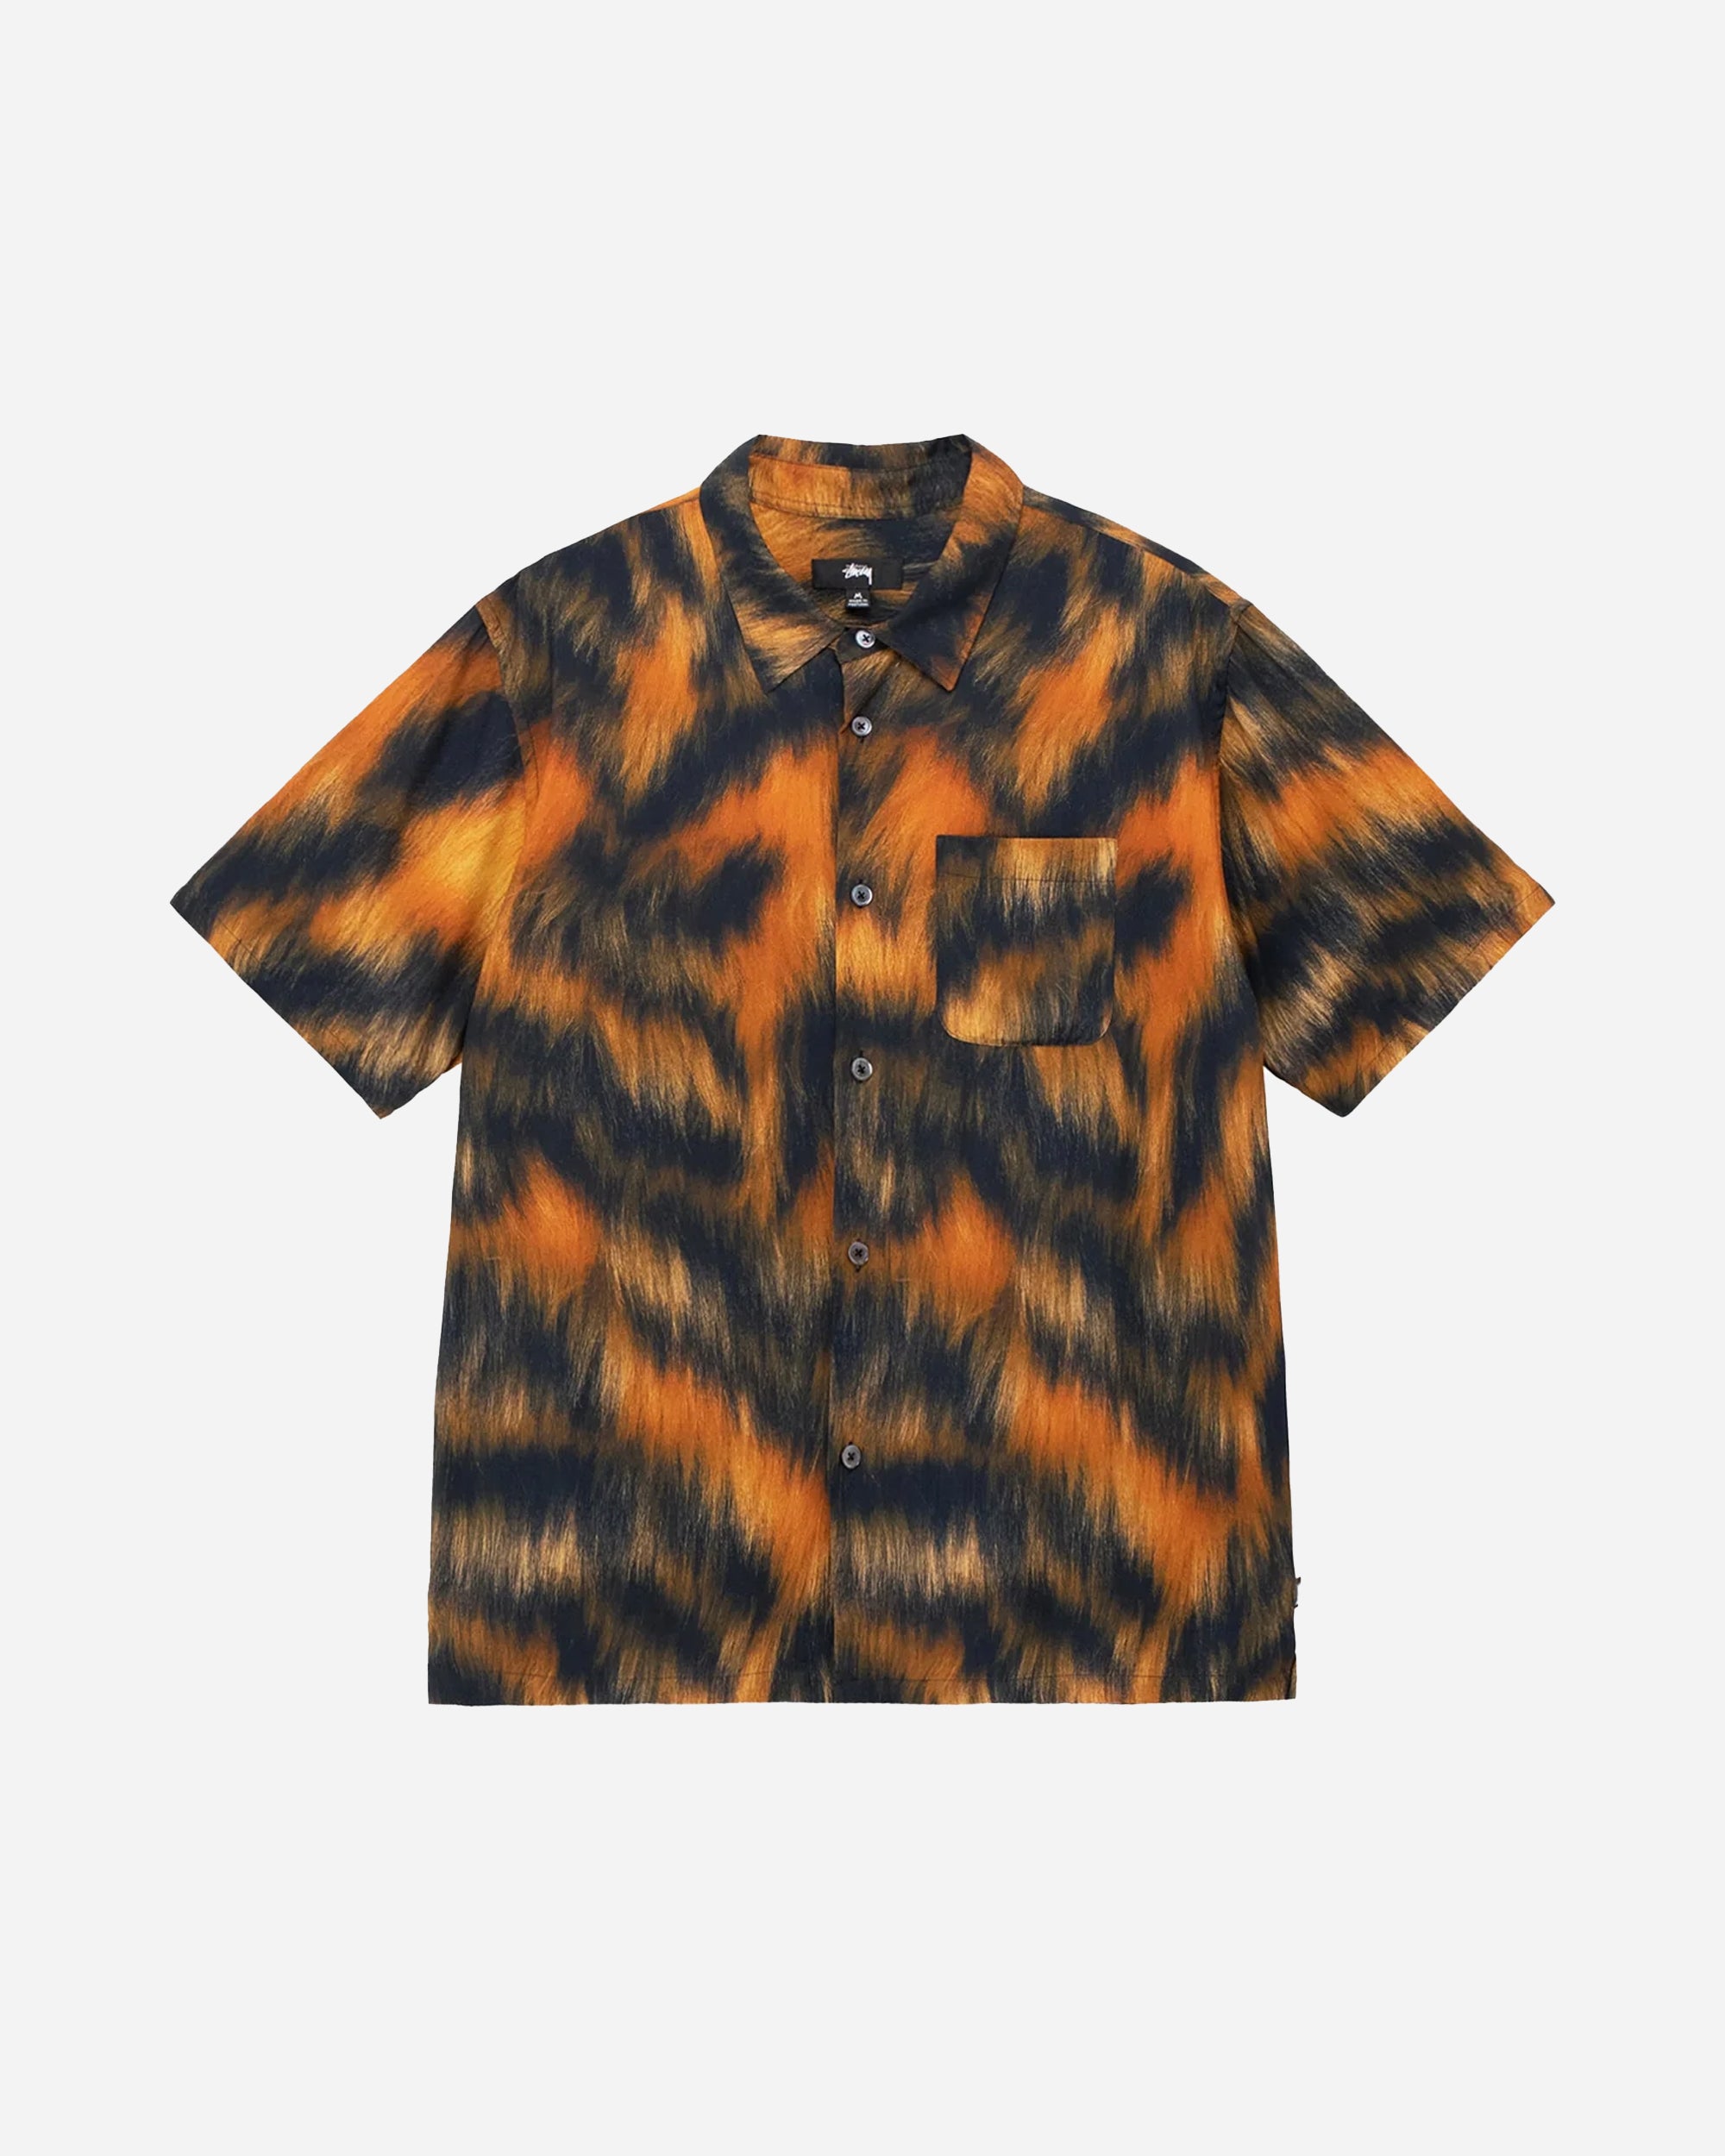 Stüssy Fur Print Shirt Tiger 1110282-924